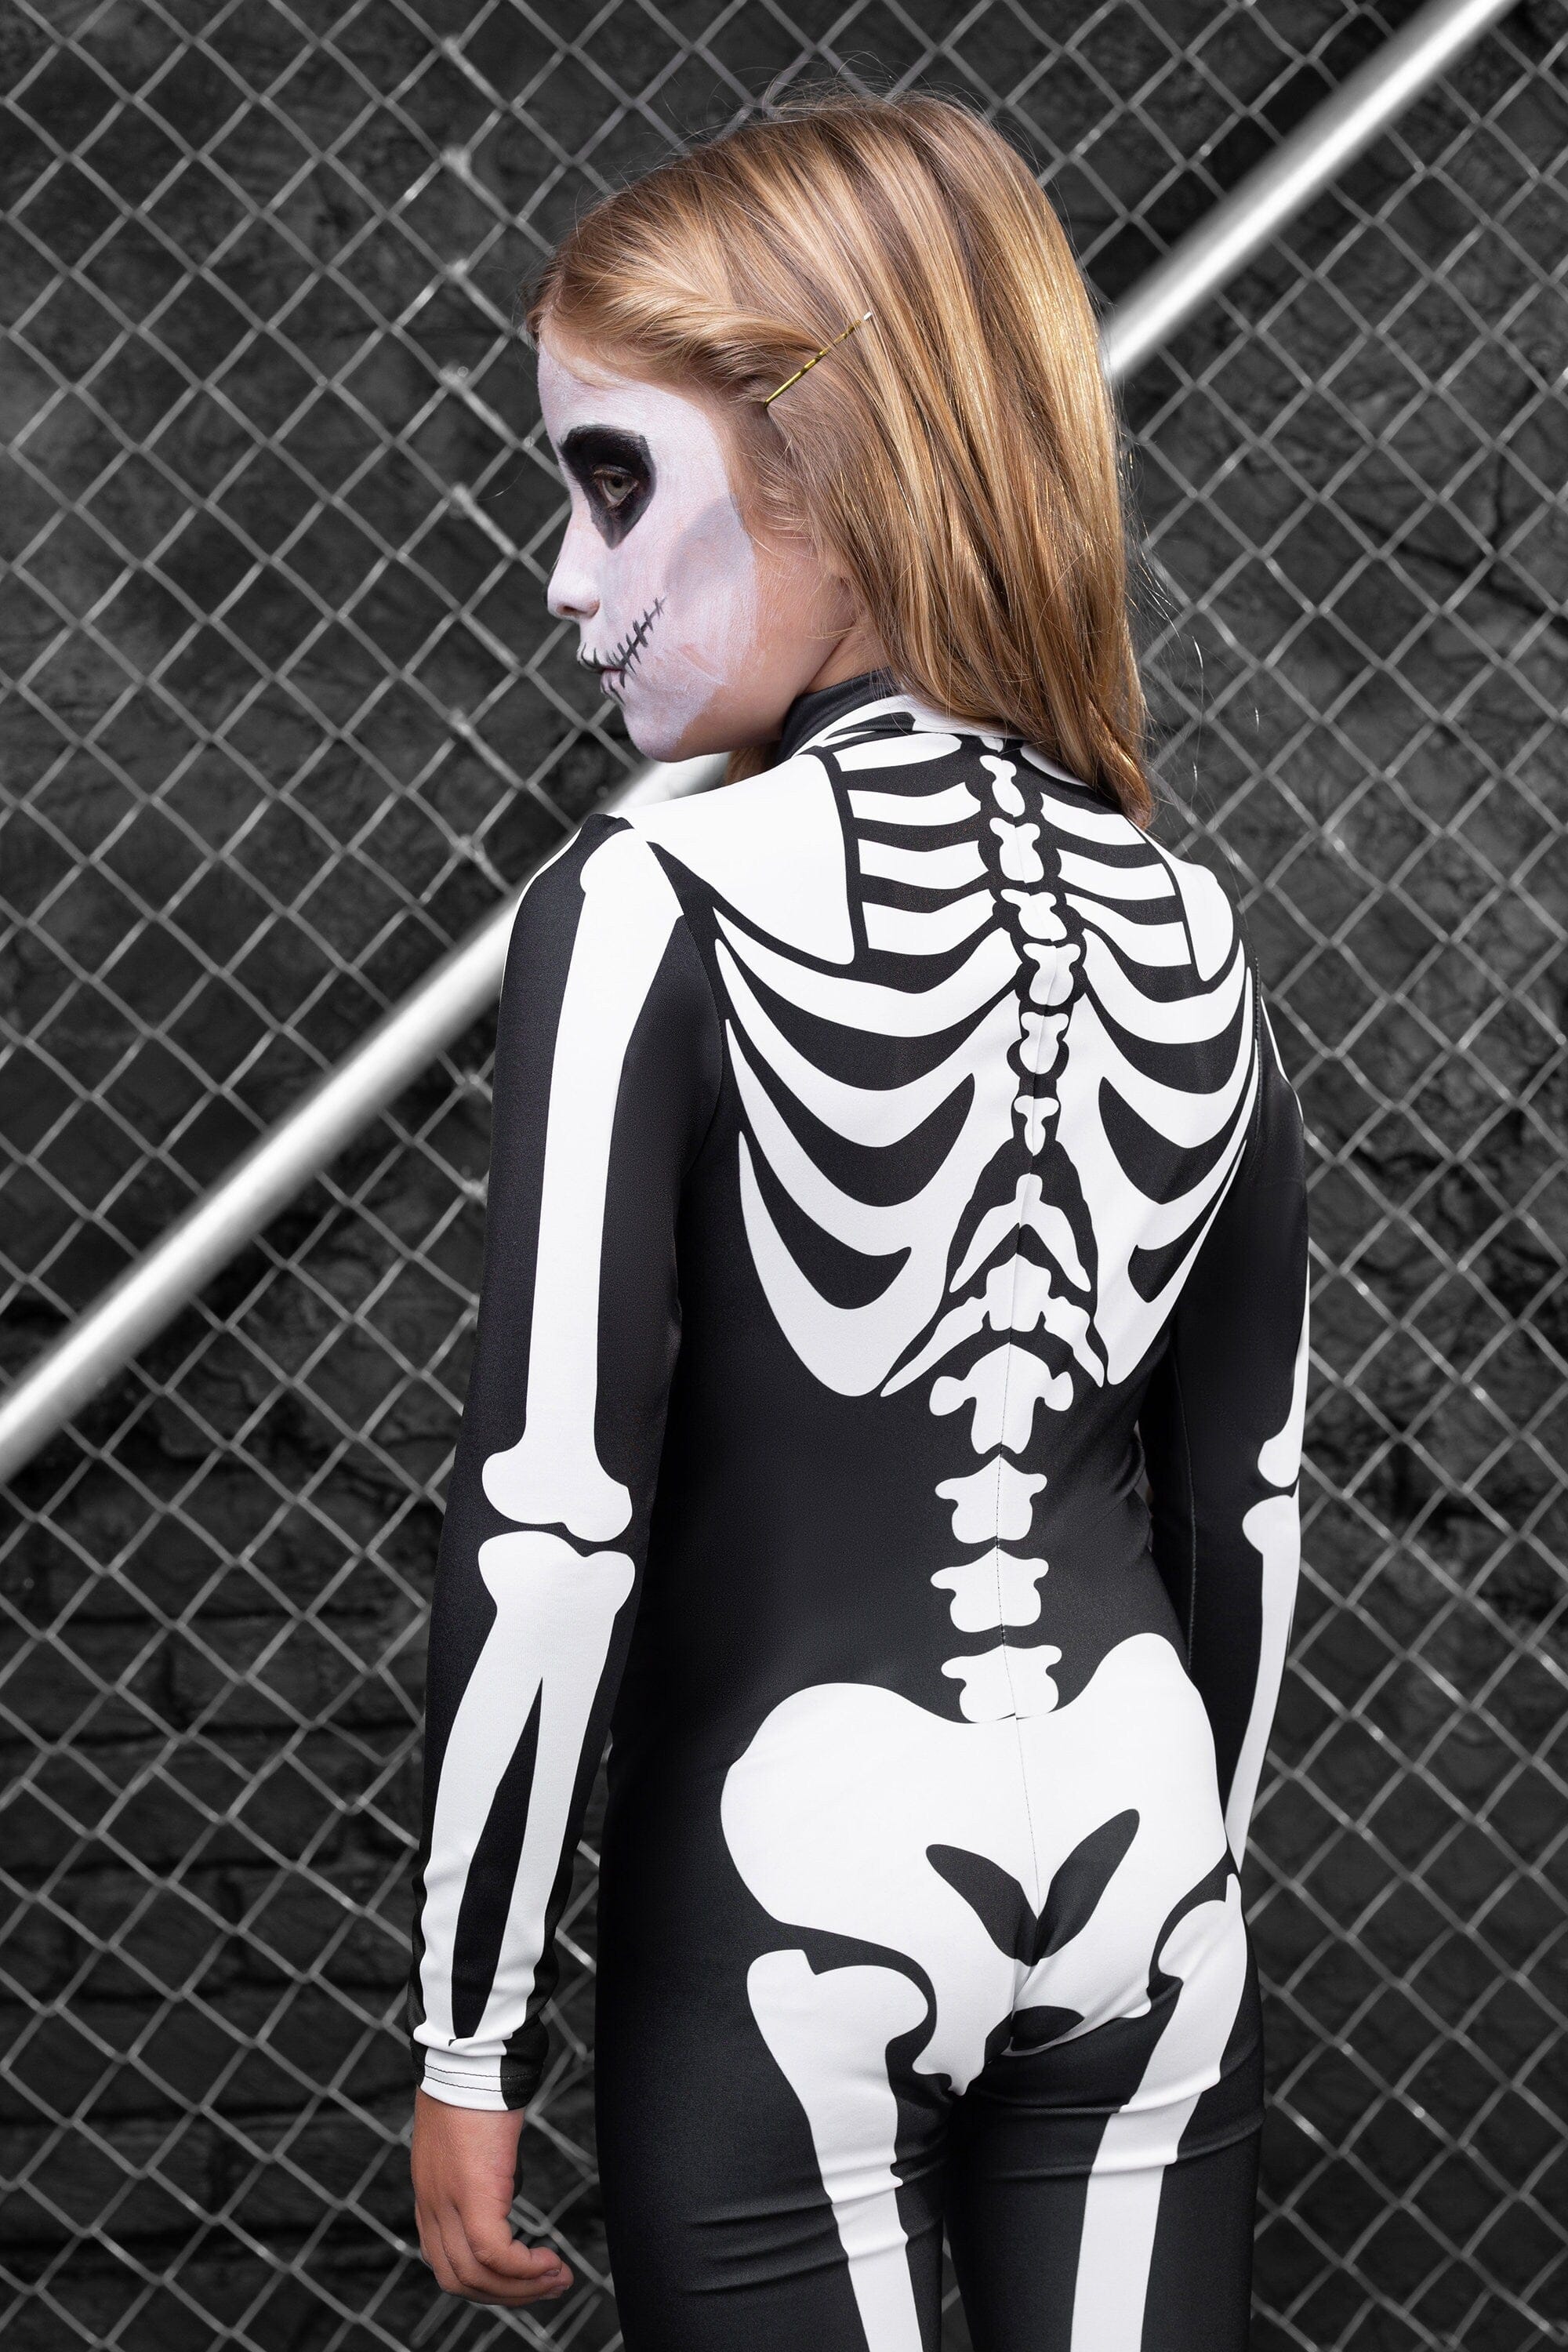 Girl's Bossy Skeleton Costume